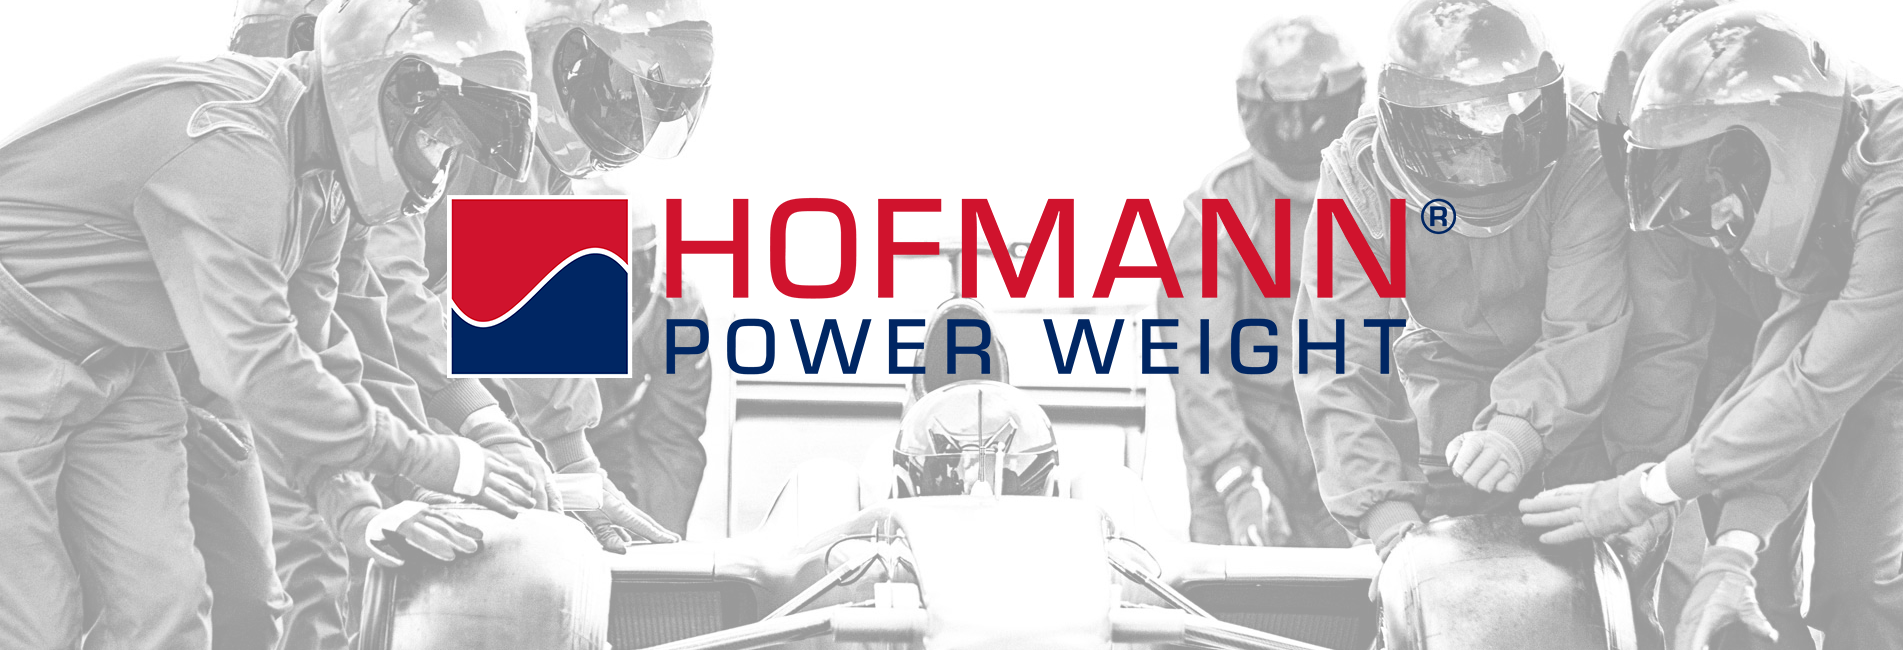 HOFMANN POWER WEIGHT